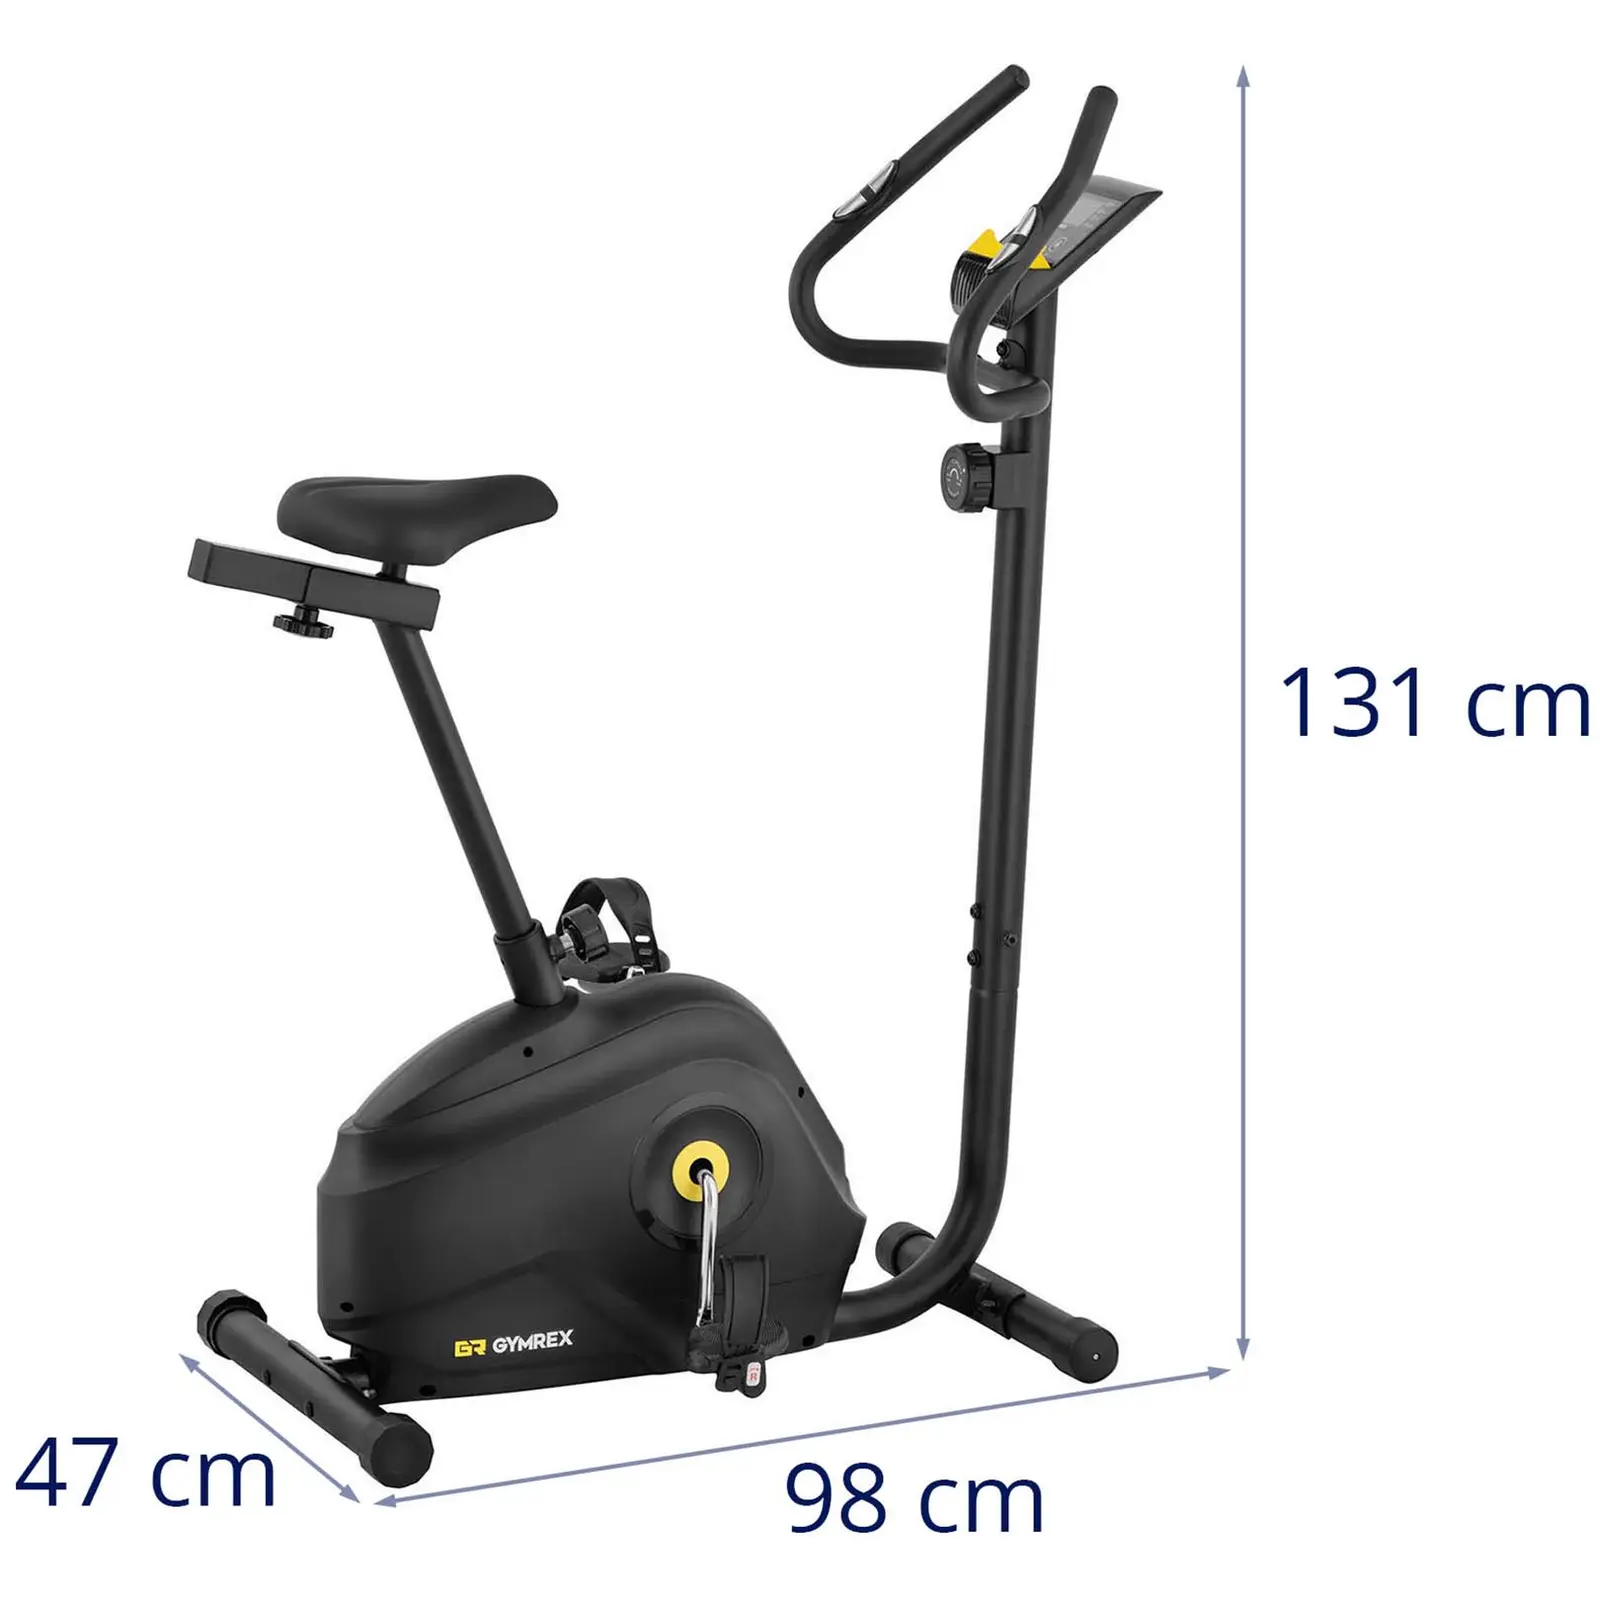 Vélo d'intérieur - Roue d'inertie de 4 kg - Supporte jusqu'à 110 kg - Écran LCD - Hauteur de 72 - 88,5 cm